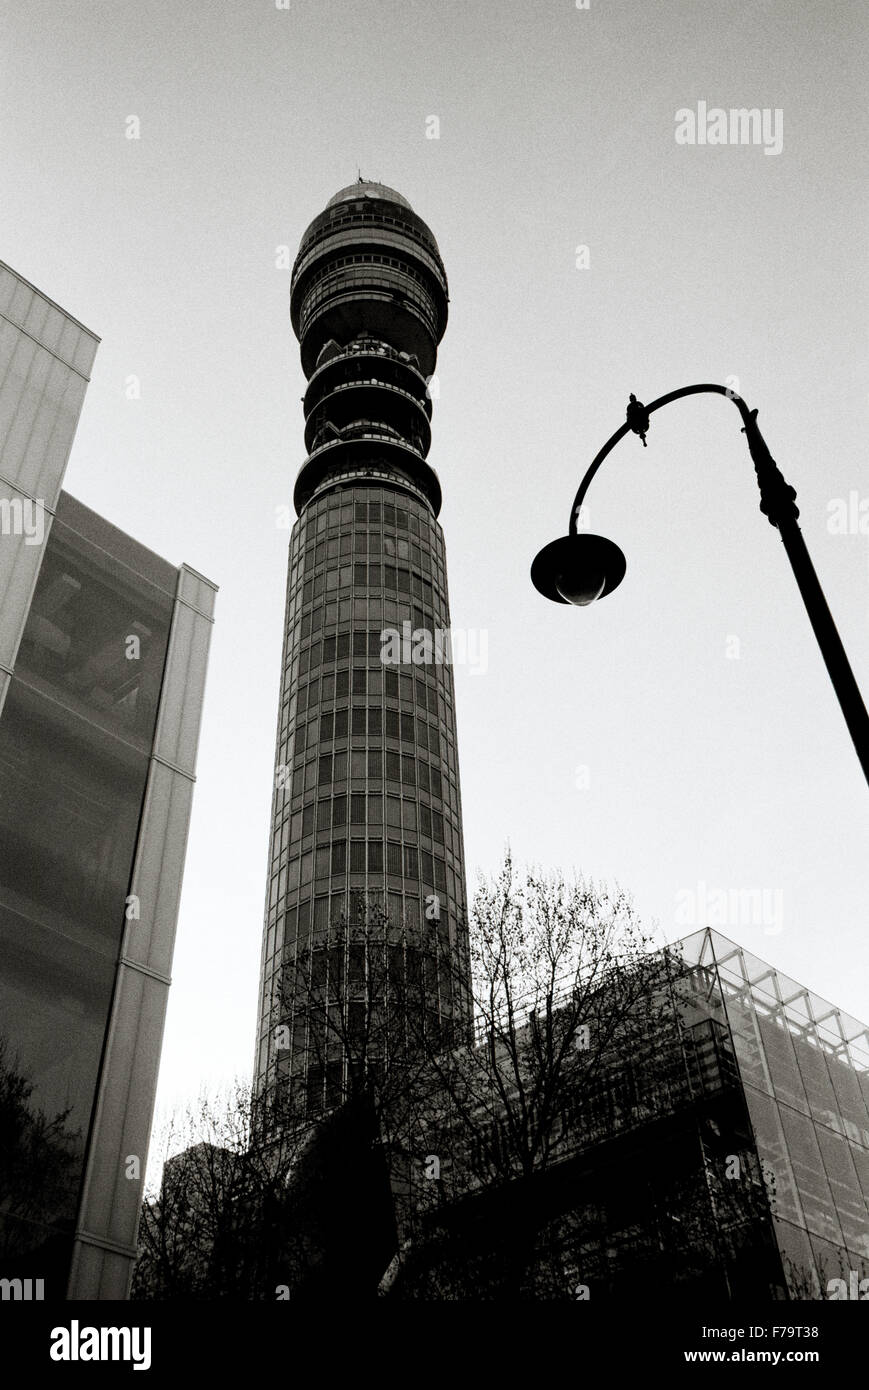 Bureau de poste BT Tower à Londres Angleterre Grande-bretagne au Royaume-Uni Royaume-Uni. L'architecture moderne de Télécommunications Télécommunications Télécommunications Technologie Banque D'Images